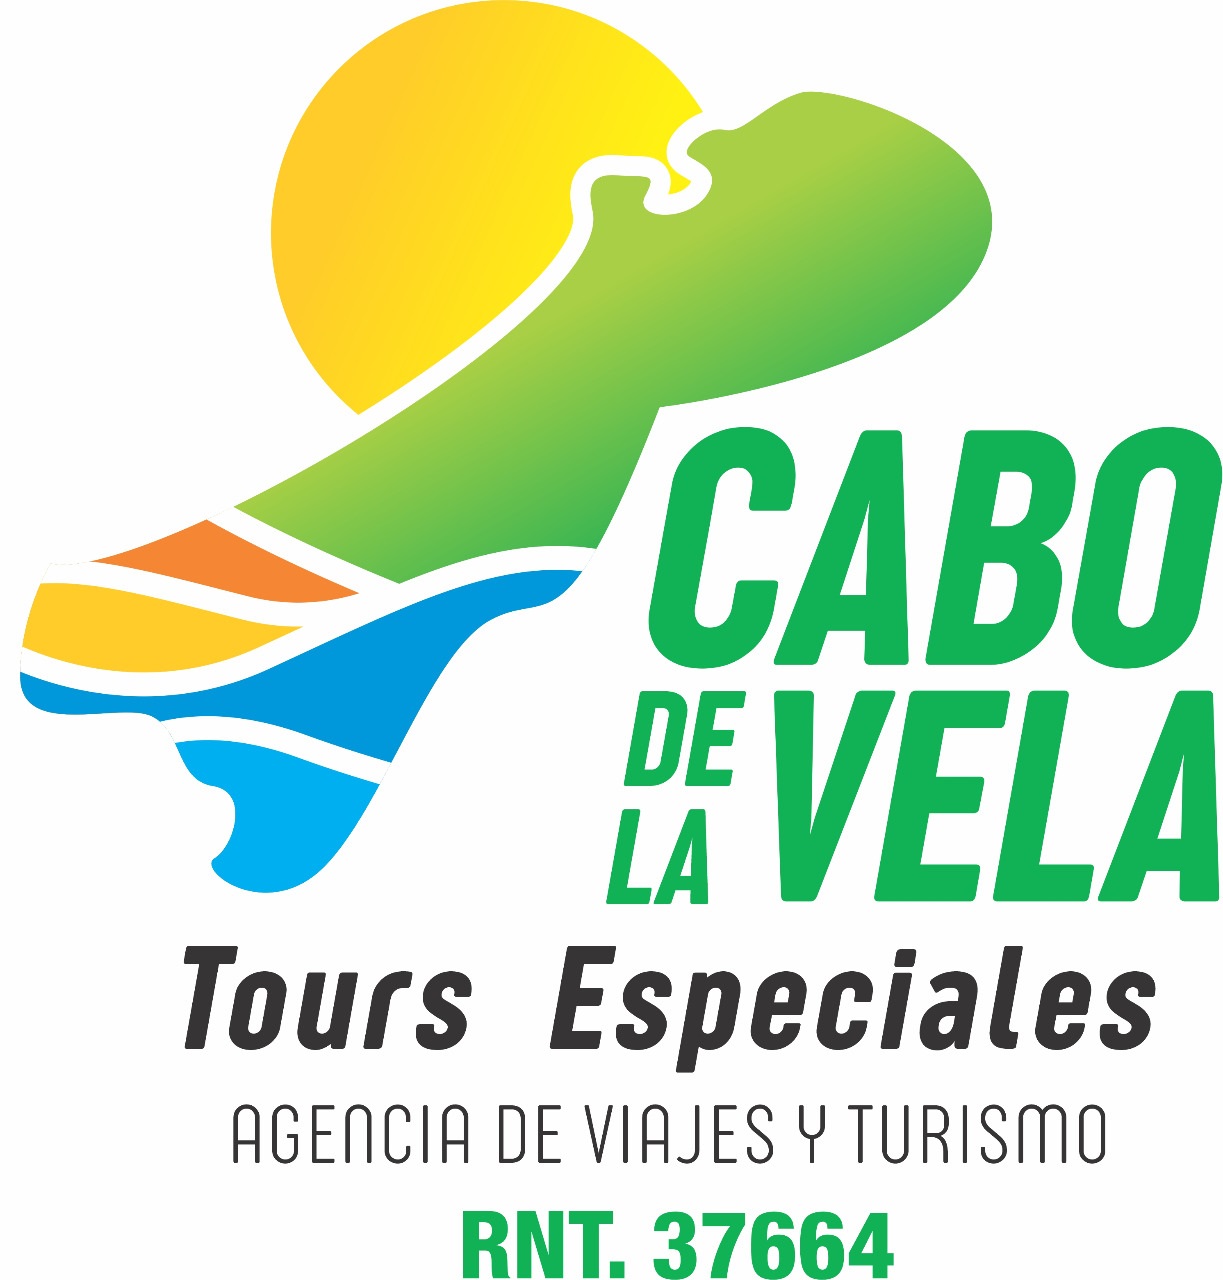 TOUR 4 DÍAS Y 3 NOCHES EN EL CABO DE LA VELA Y PUNTA GALLINA.